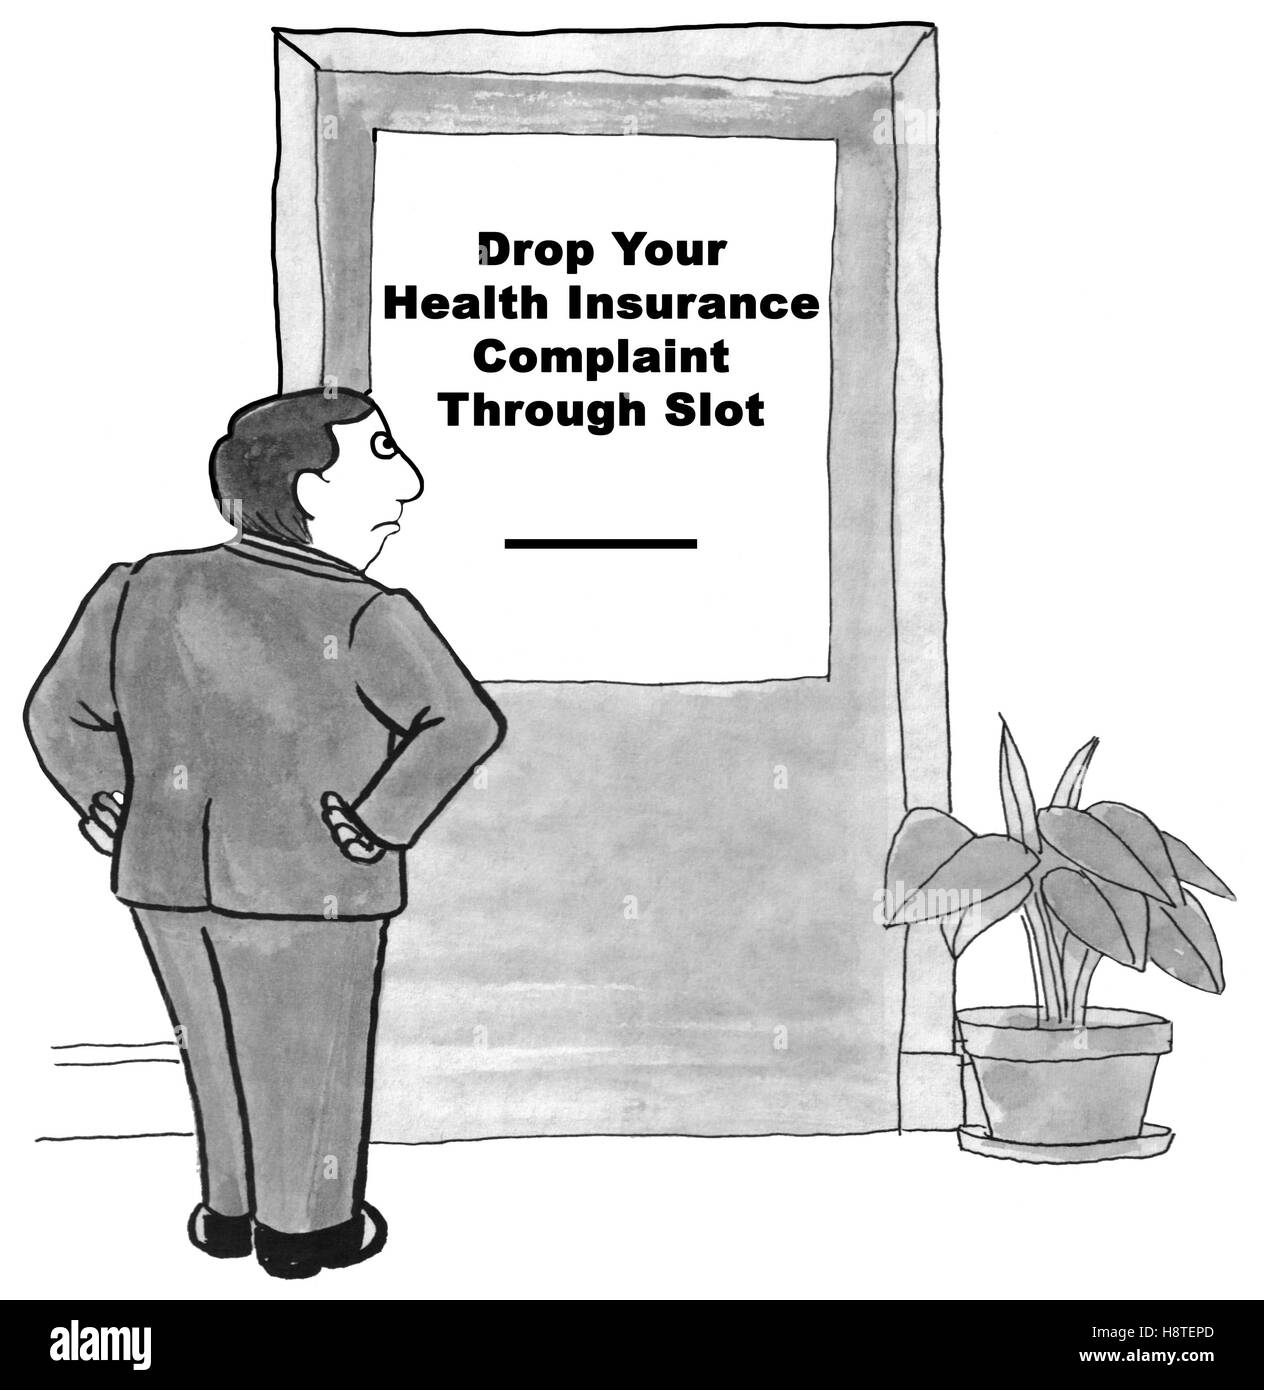 Ilustración en blanco y negro de su frustración con la compañía de seguro de salud. Foto de stock